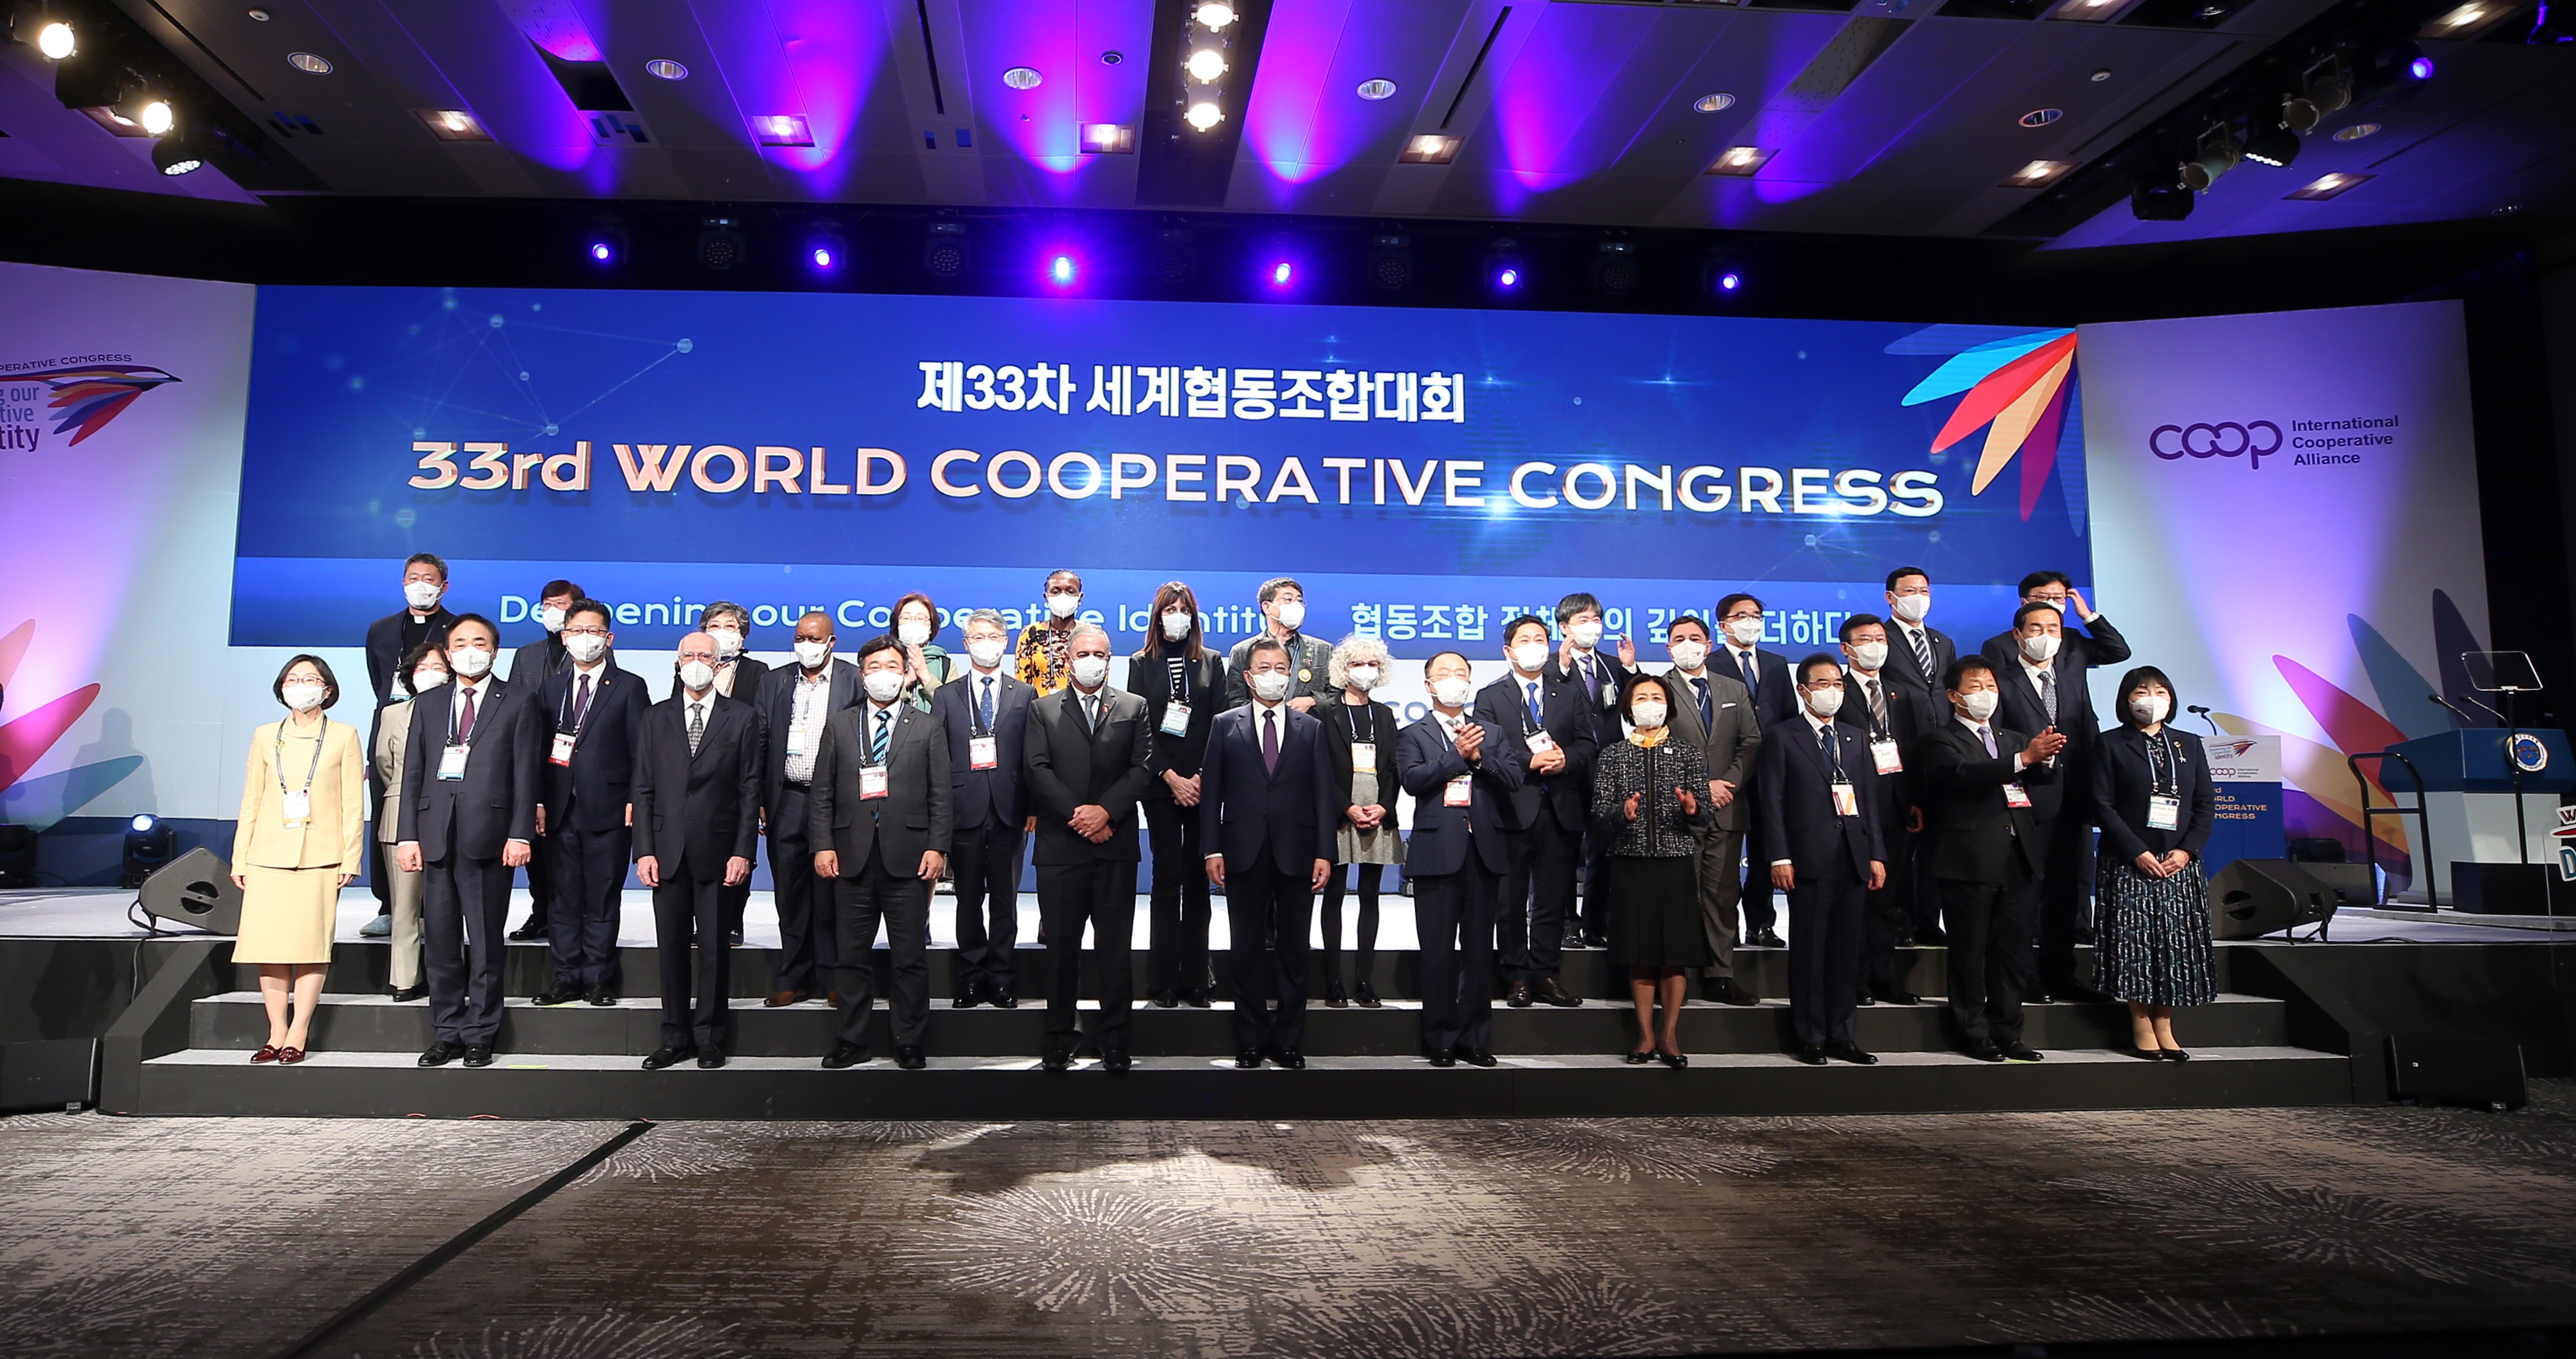 הקונגרס הקואופרטיבי העולמי ה-33. צילום: ICA